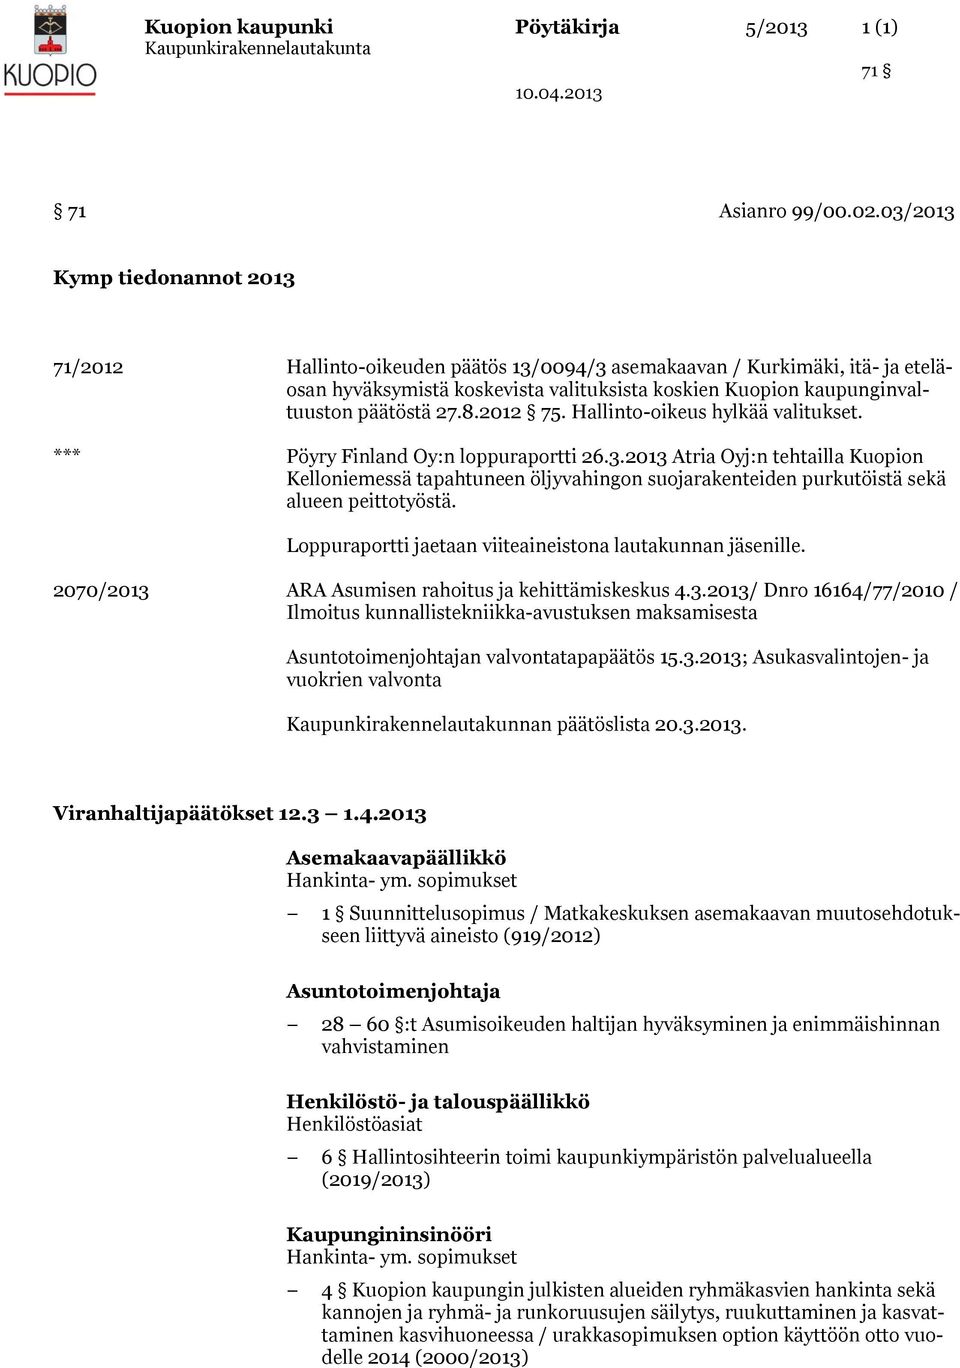 27.8.2012 75. Hallinto-oikeus hylkää valitukset. *** Pöyry Finland Oy:n loppuraportti 26.3.